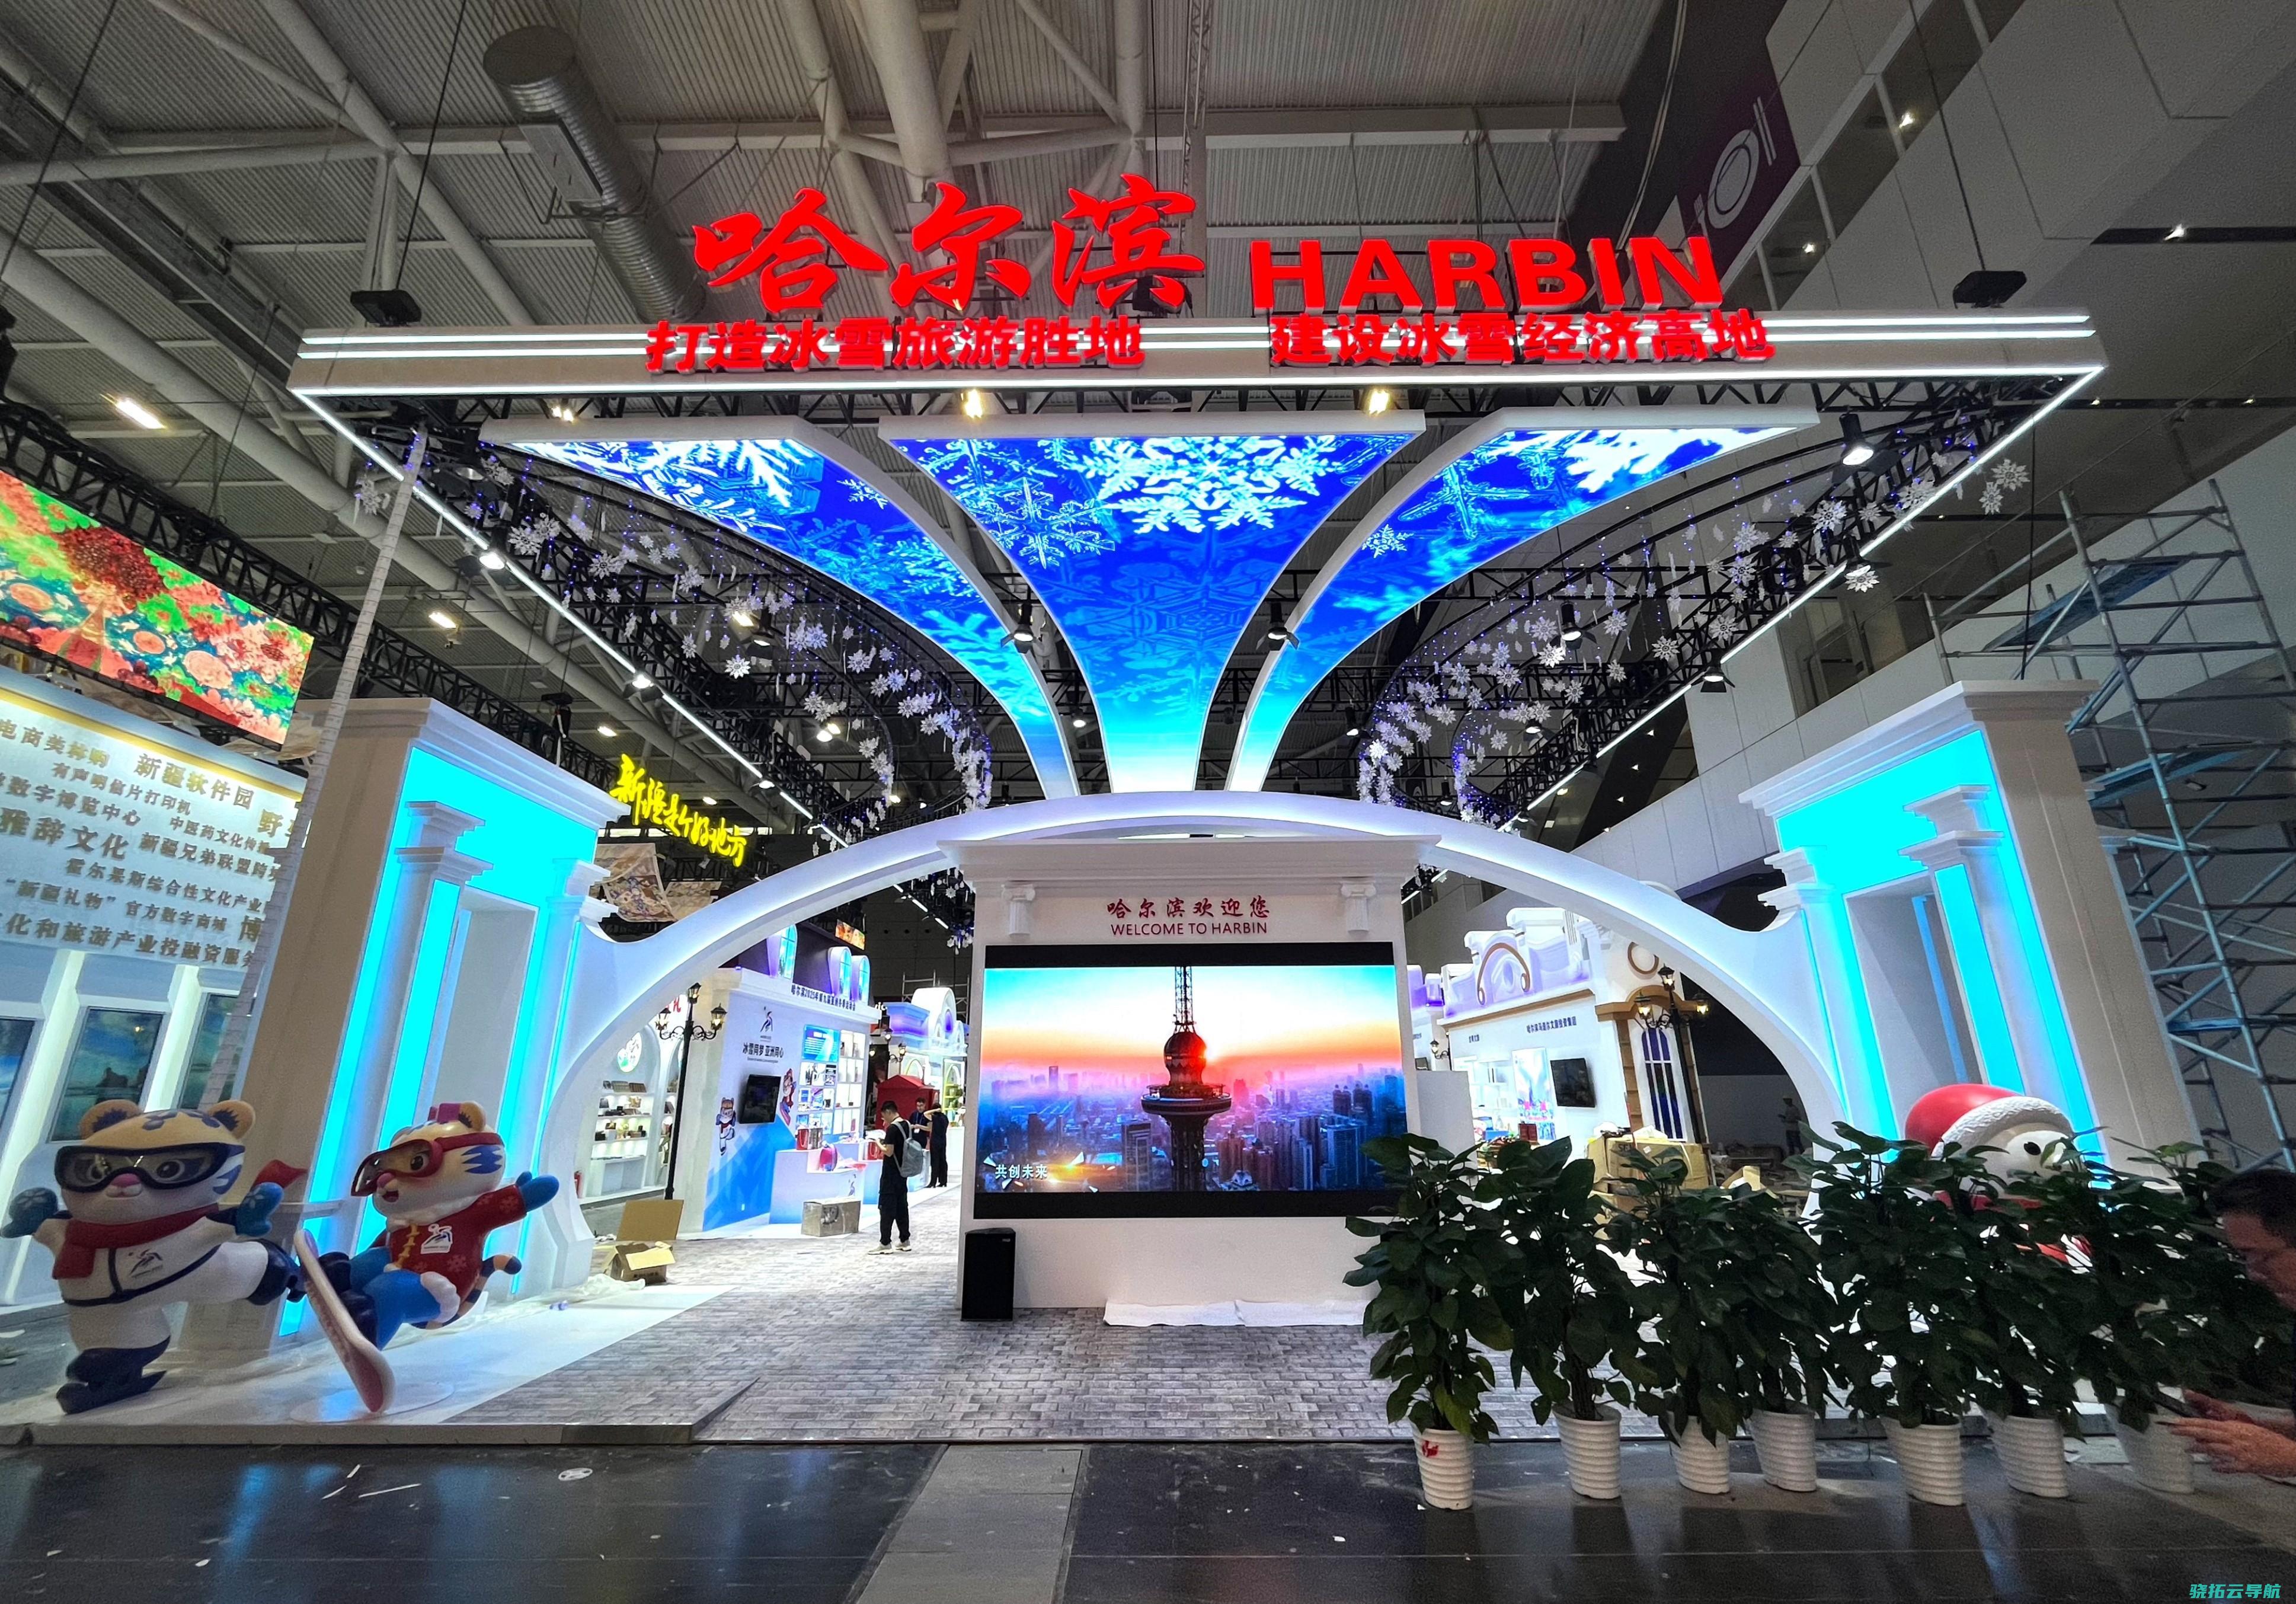 新形式 第二十届文博会哈尔滨展馆出现五大亮点片面展现创意设计产业与冰雪经济 新业态 特征文明旅行融合开展的新产品